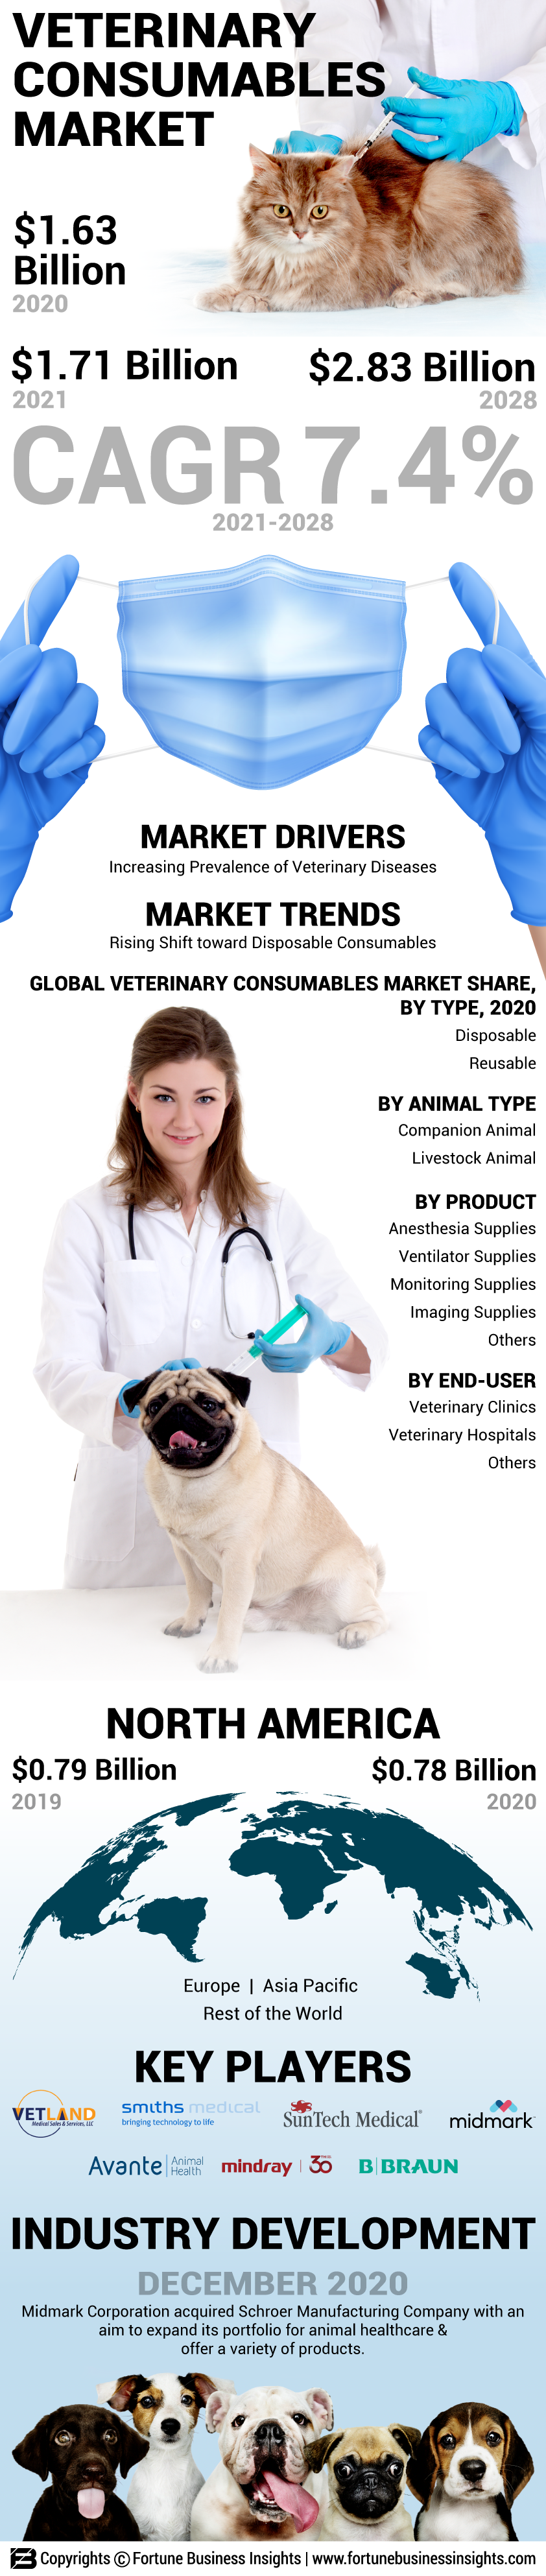 Veterinary Consumables Market